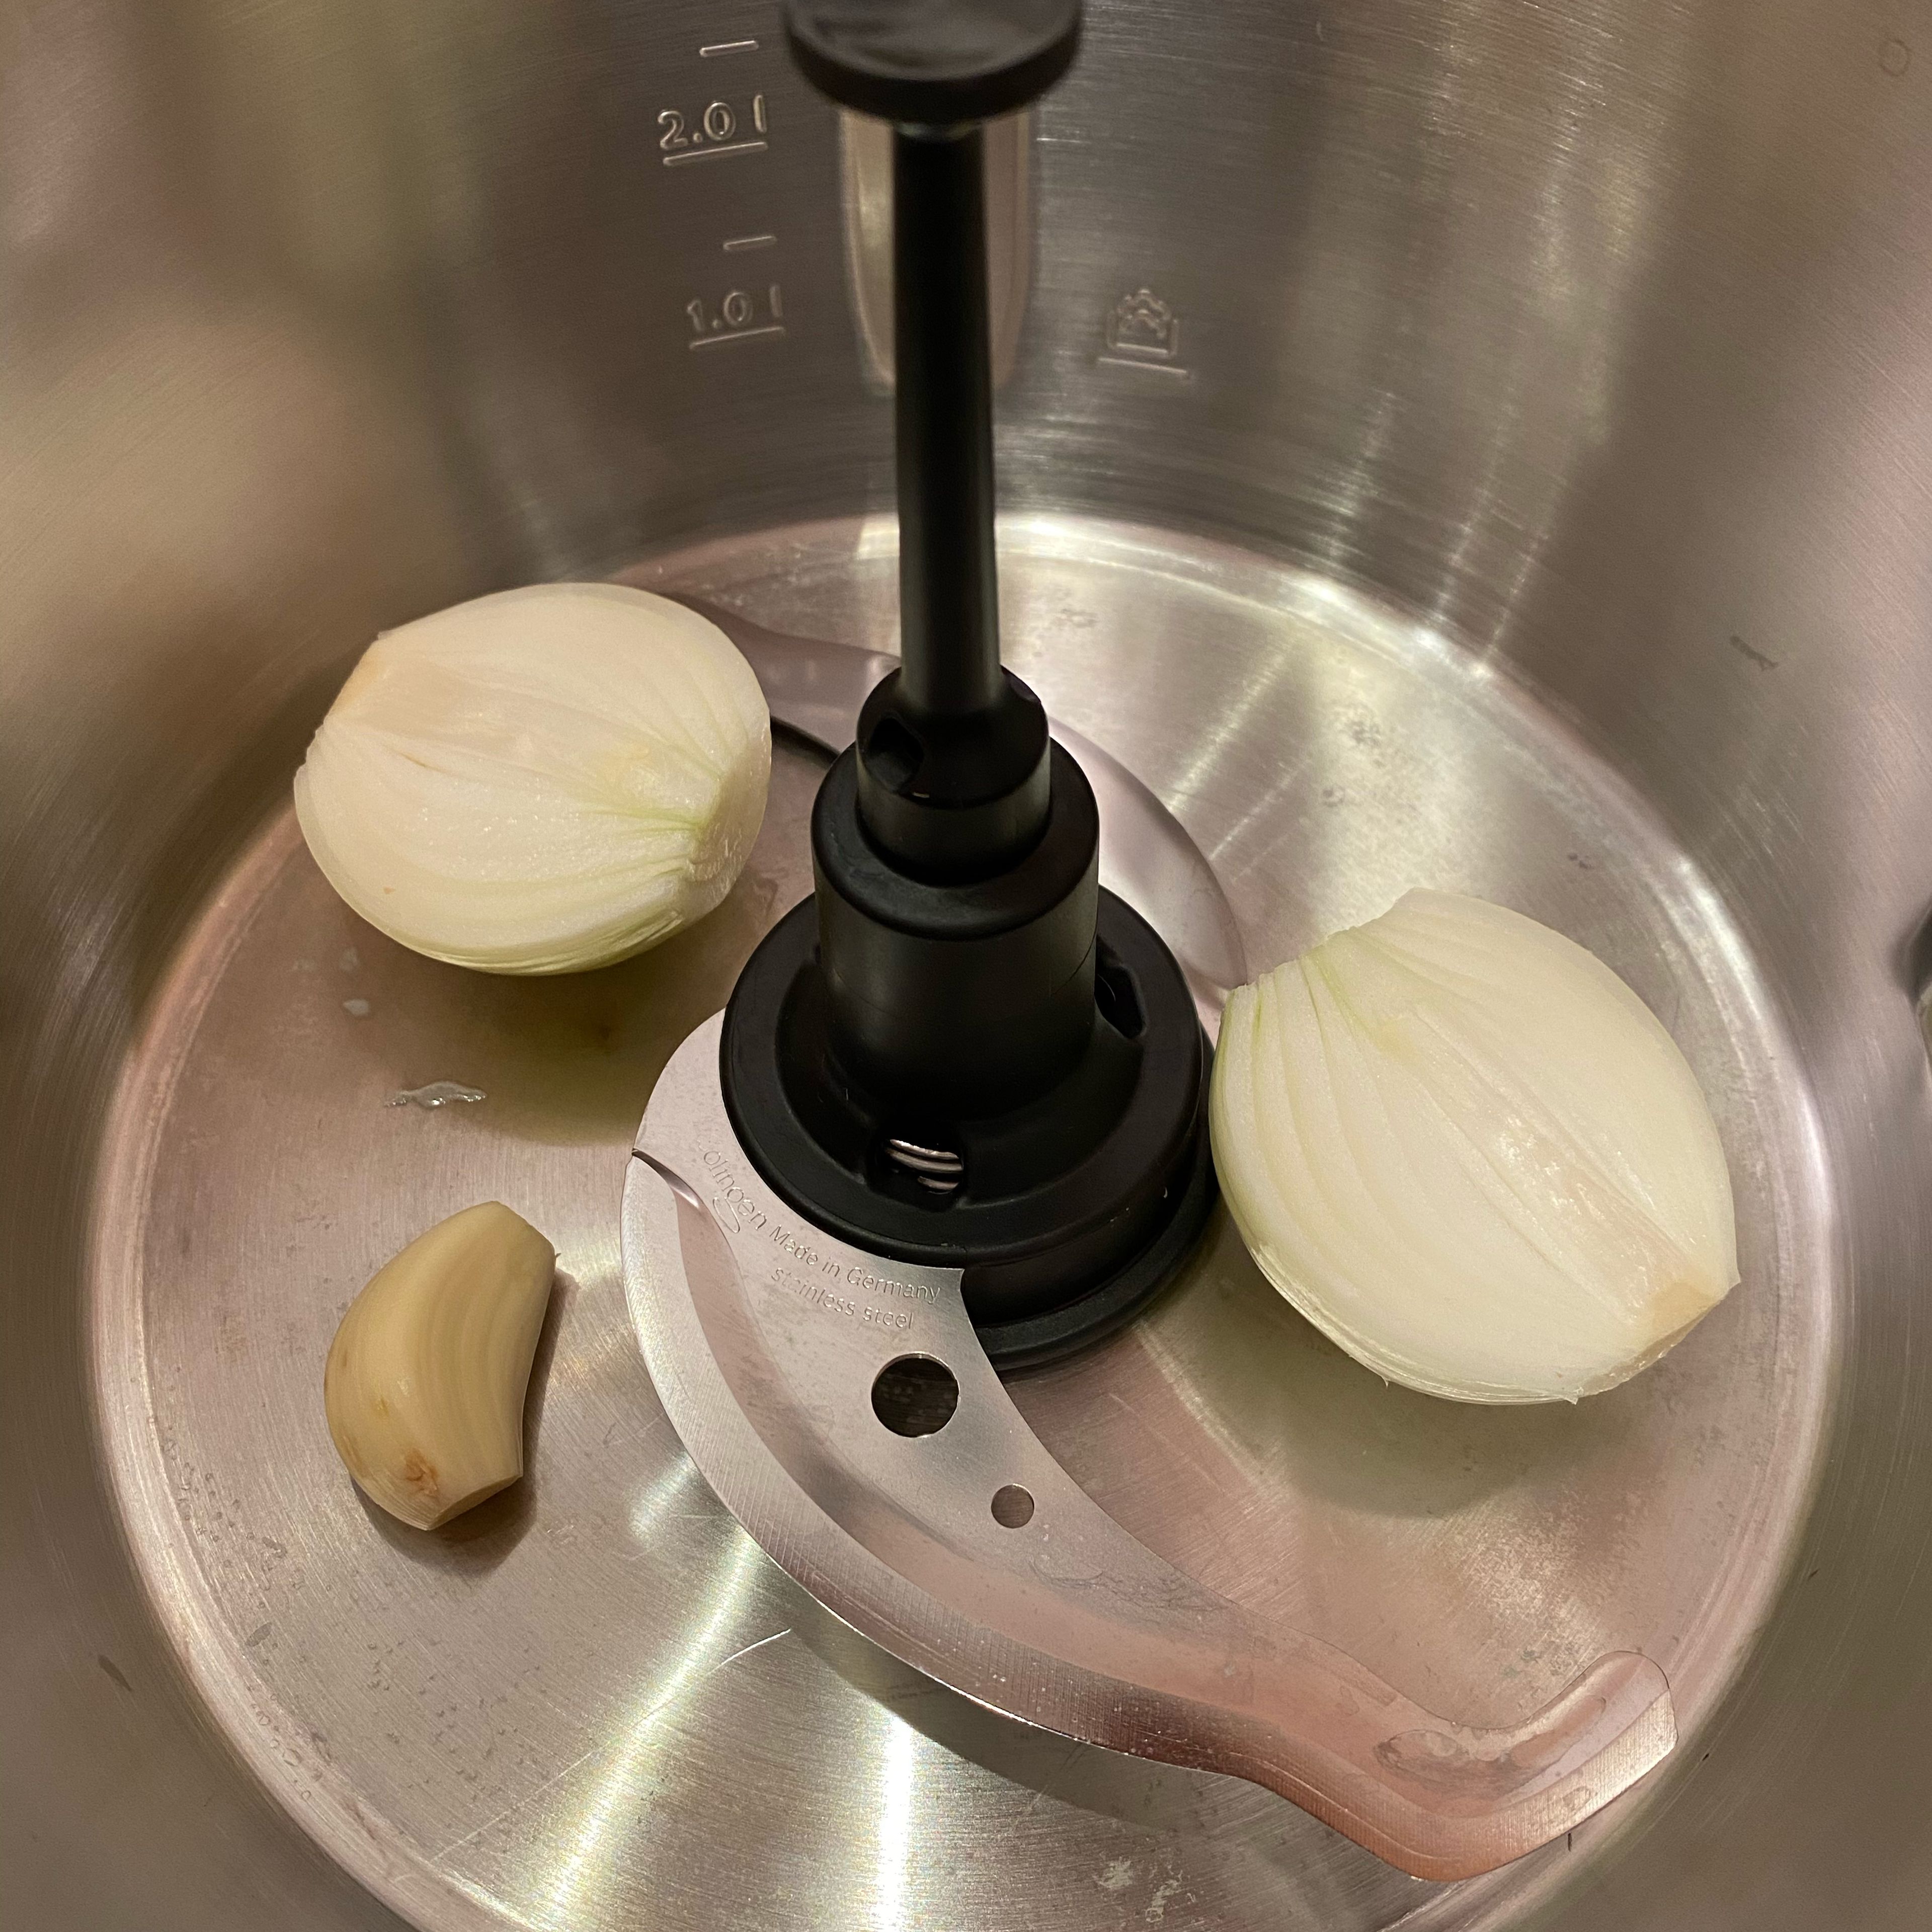 Universalmesser in den Mixtopf einsetzen, geschälte Knoblauchzehe und geschälte, halbierte Zwiebel hinzufügen, Deckel inkl. Messbecher schließen und zerkleinern (Universalmesser | Stufe 14 | 6 Sekunden). Universalmesser entnehmen.